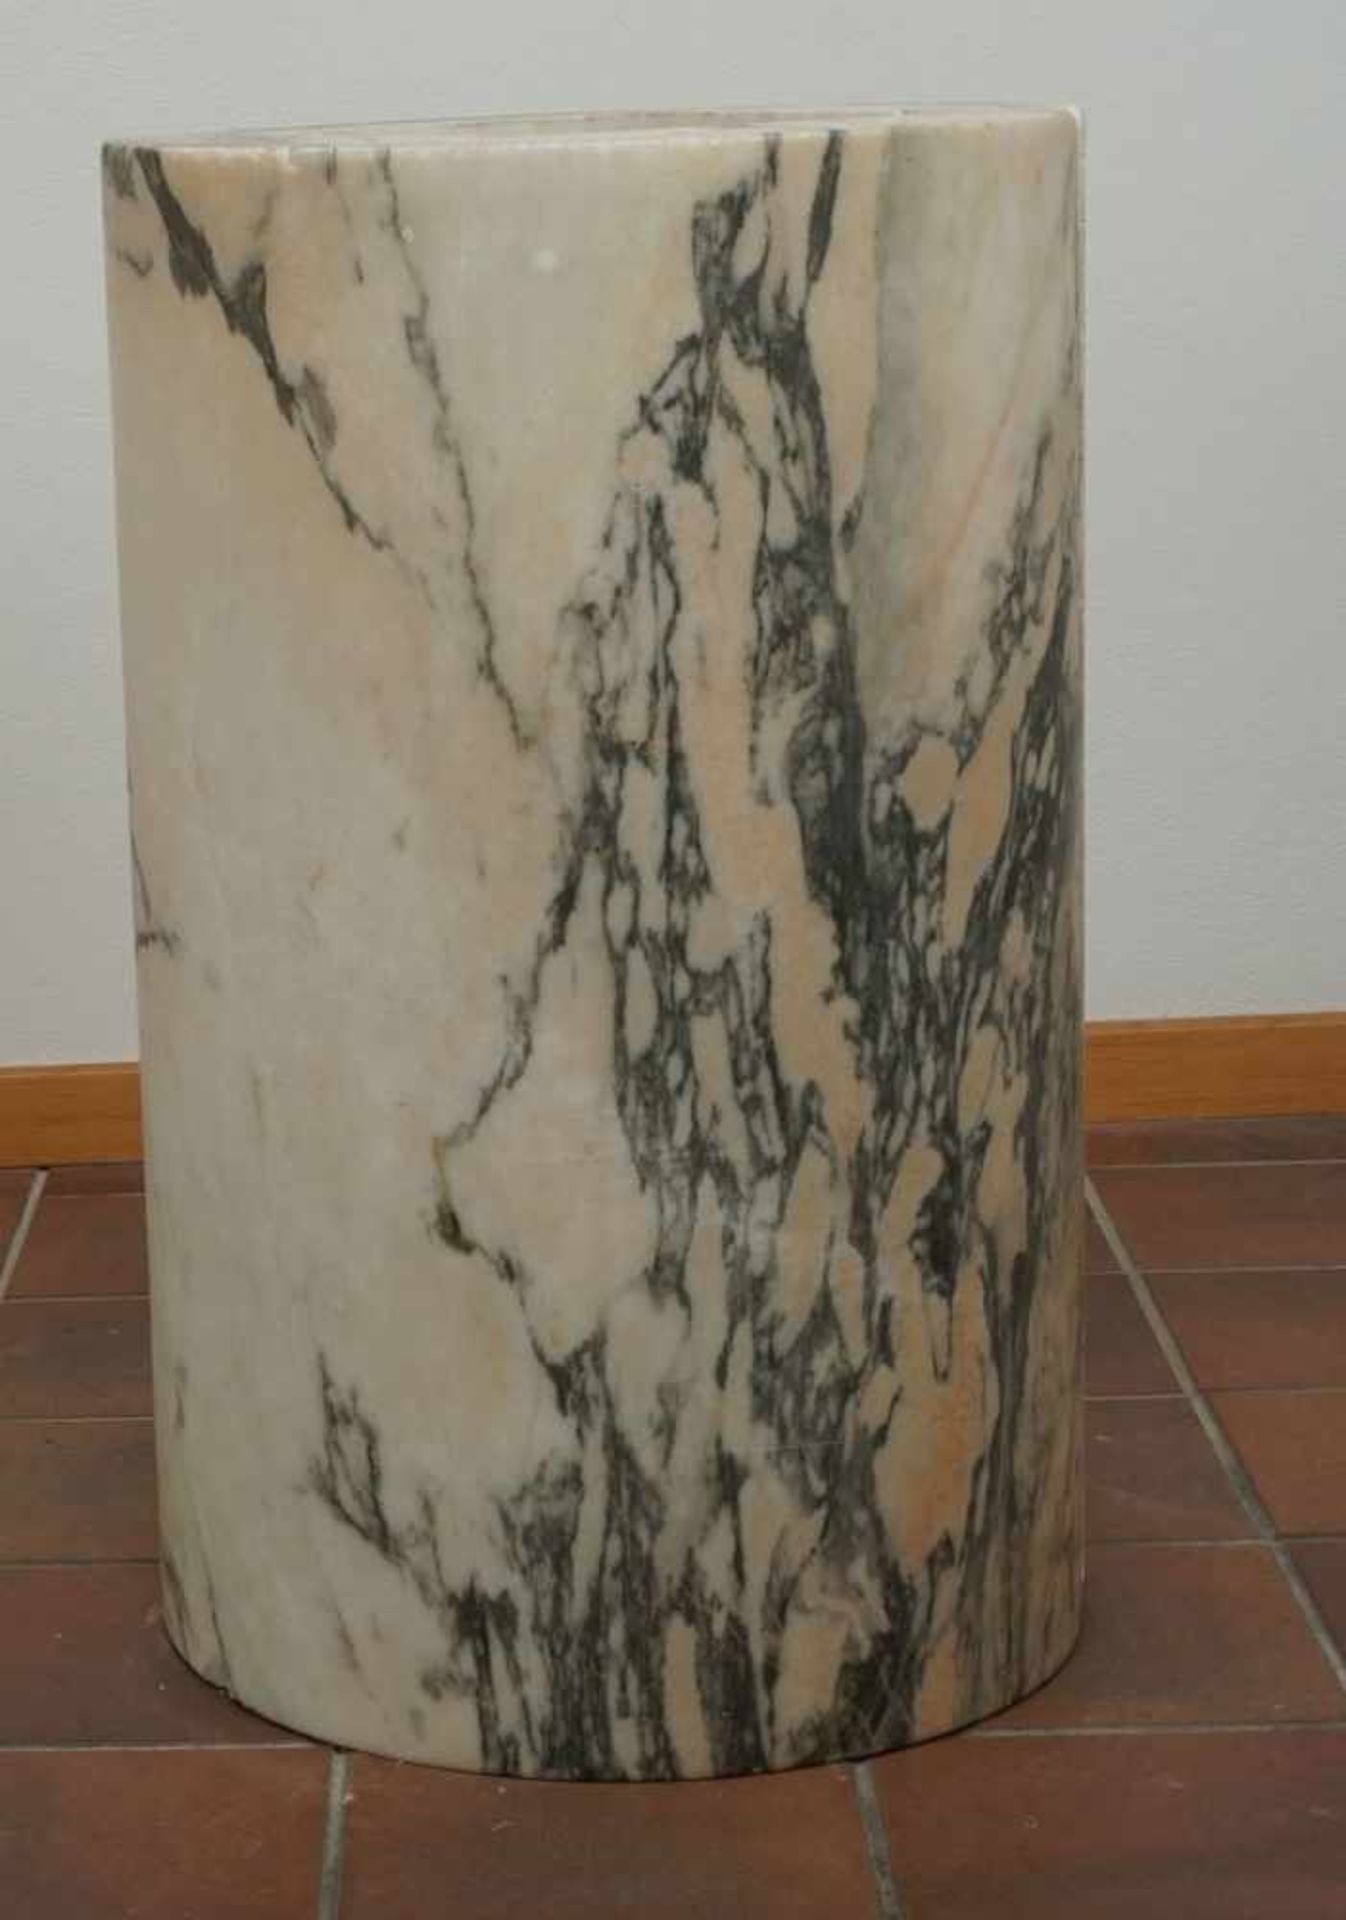 Marmor Stele / Postamentzweiteilig, schwarz-weiß-grün-orange marmoriert, altersgemäßer Zustand, - Image 3 of 3